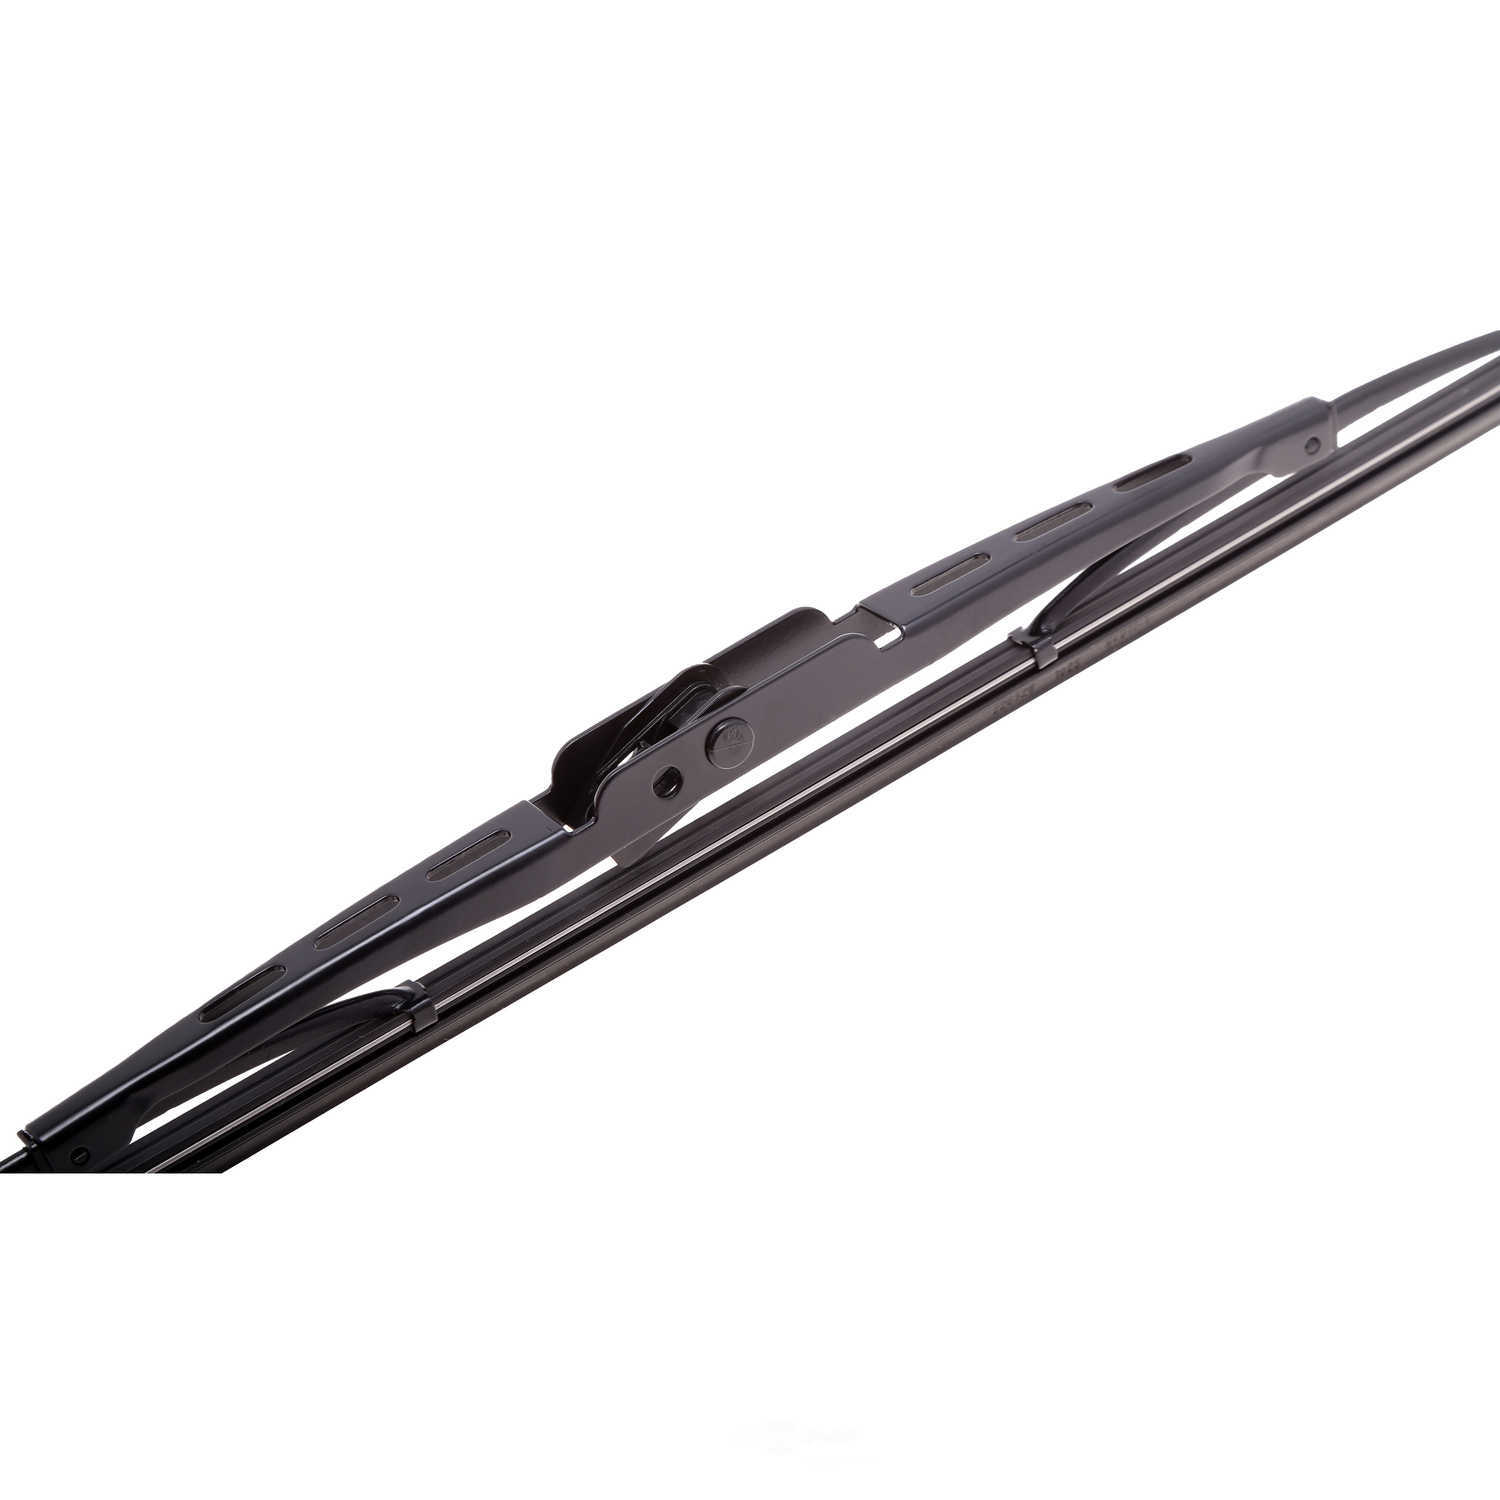 ANCO WIPER PRODUCTS - ANCO 97-Series Wiper Blade - ANC 97-14